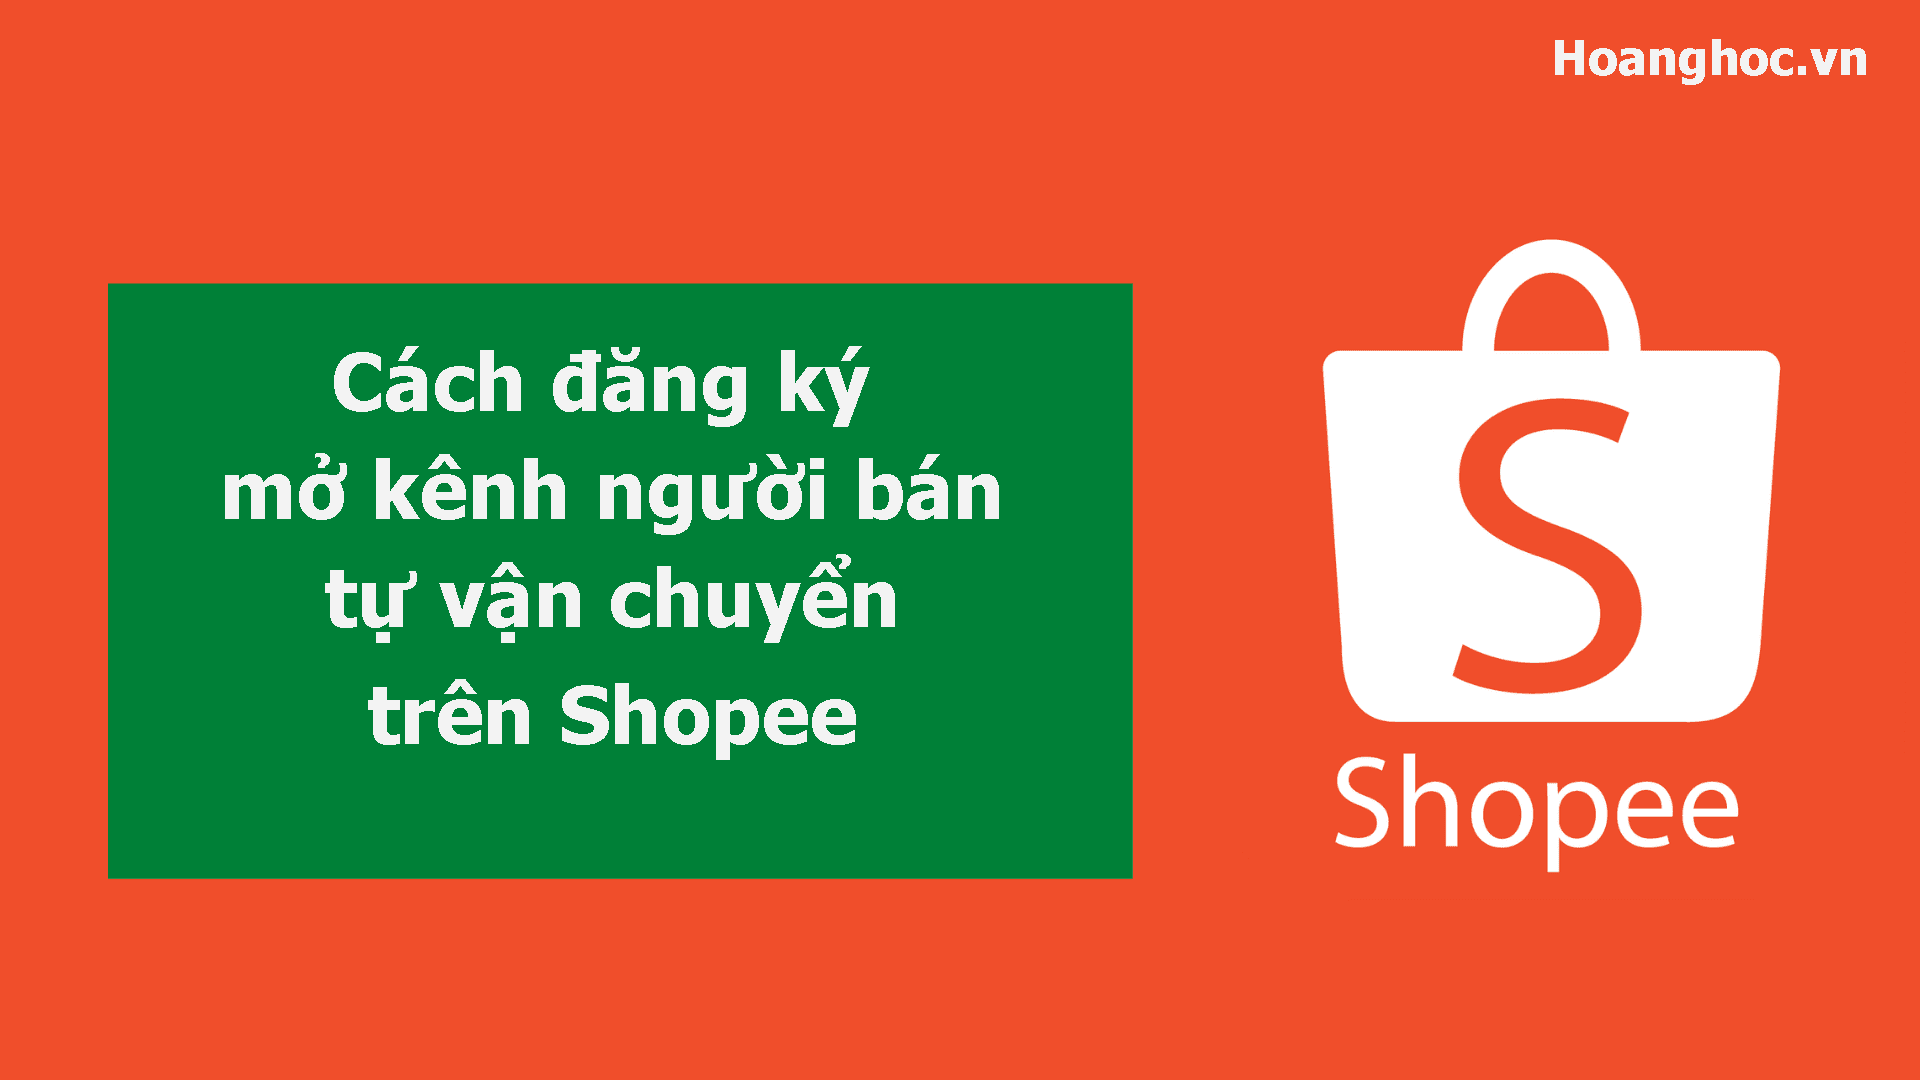 Cách đăng ký mở kênh người bán tự vận chuyển trên Shopee